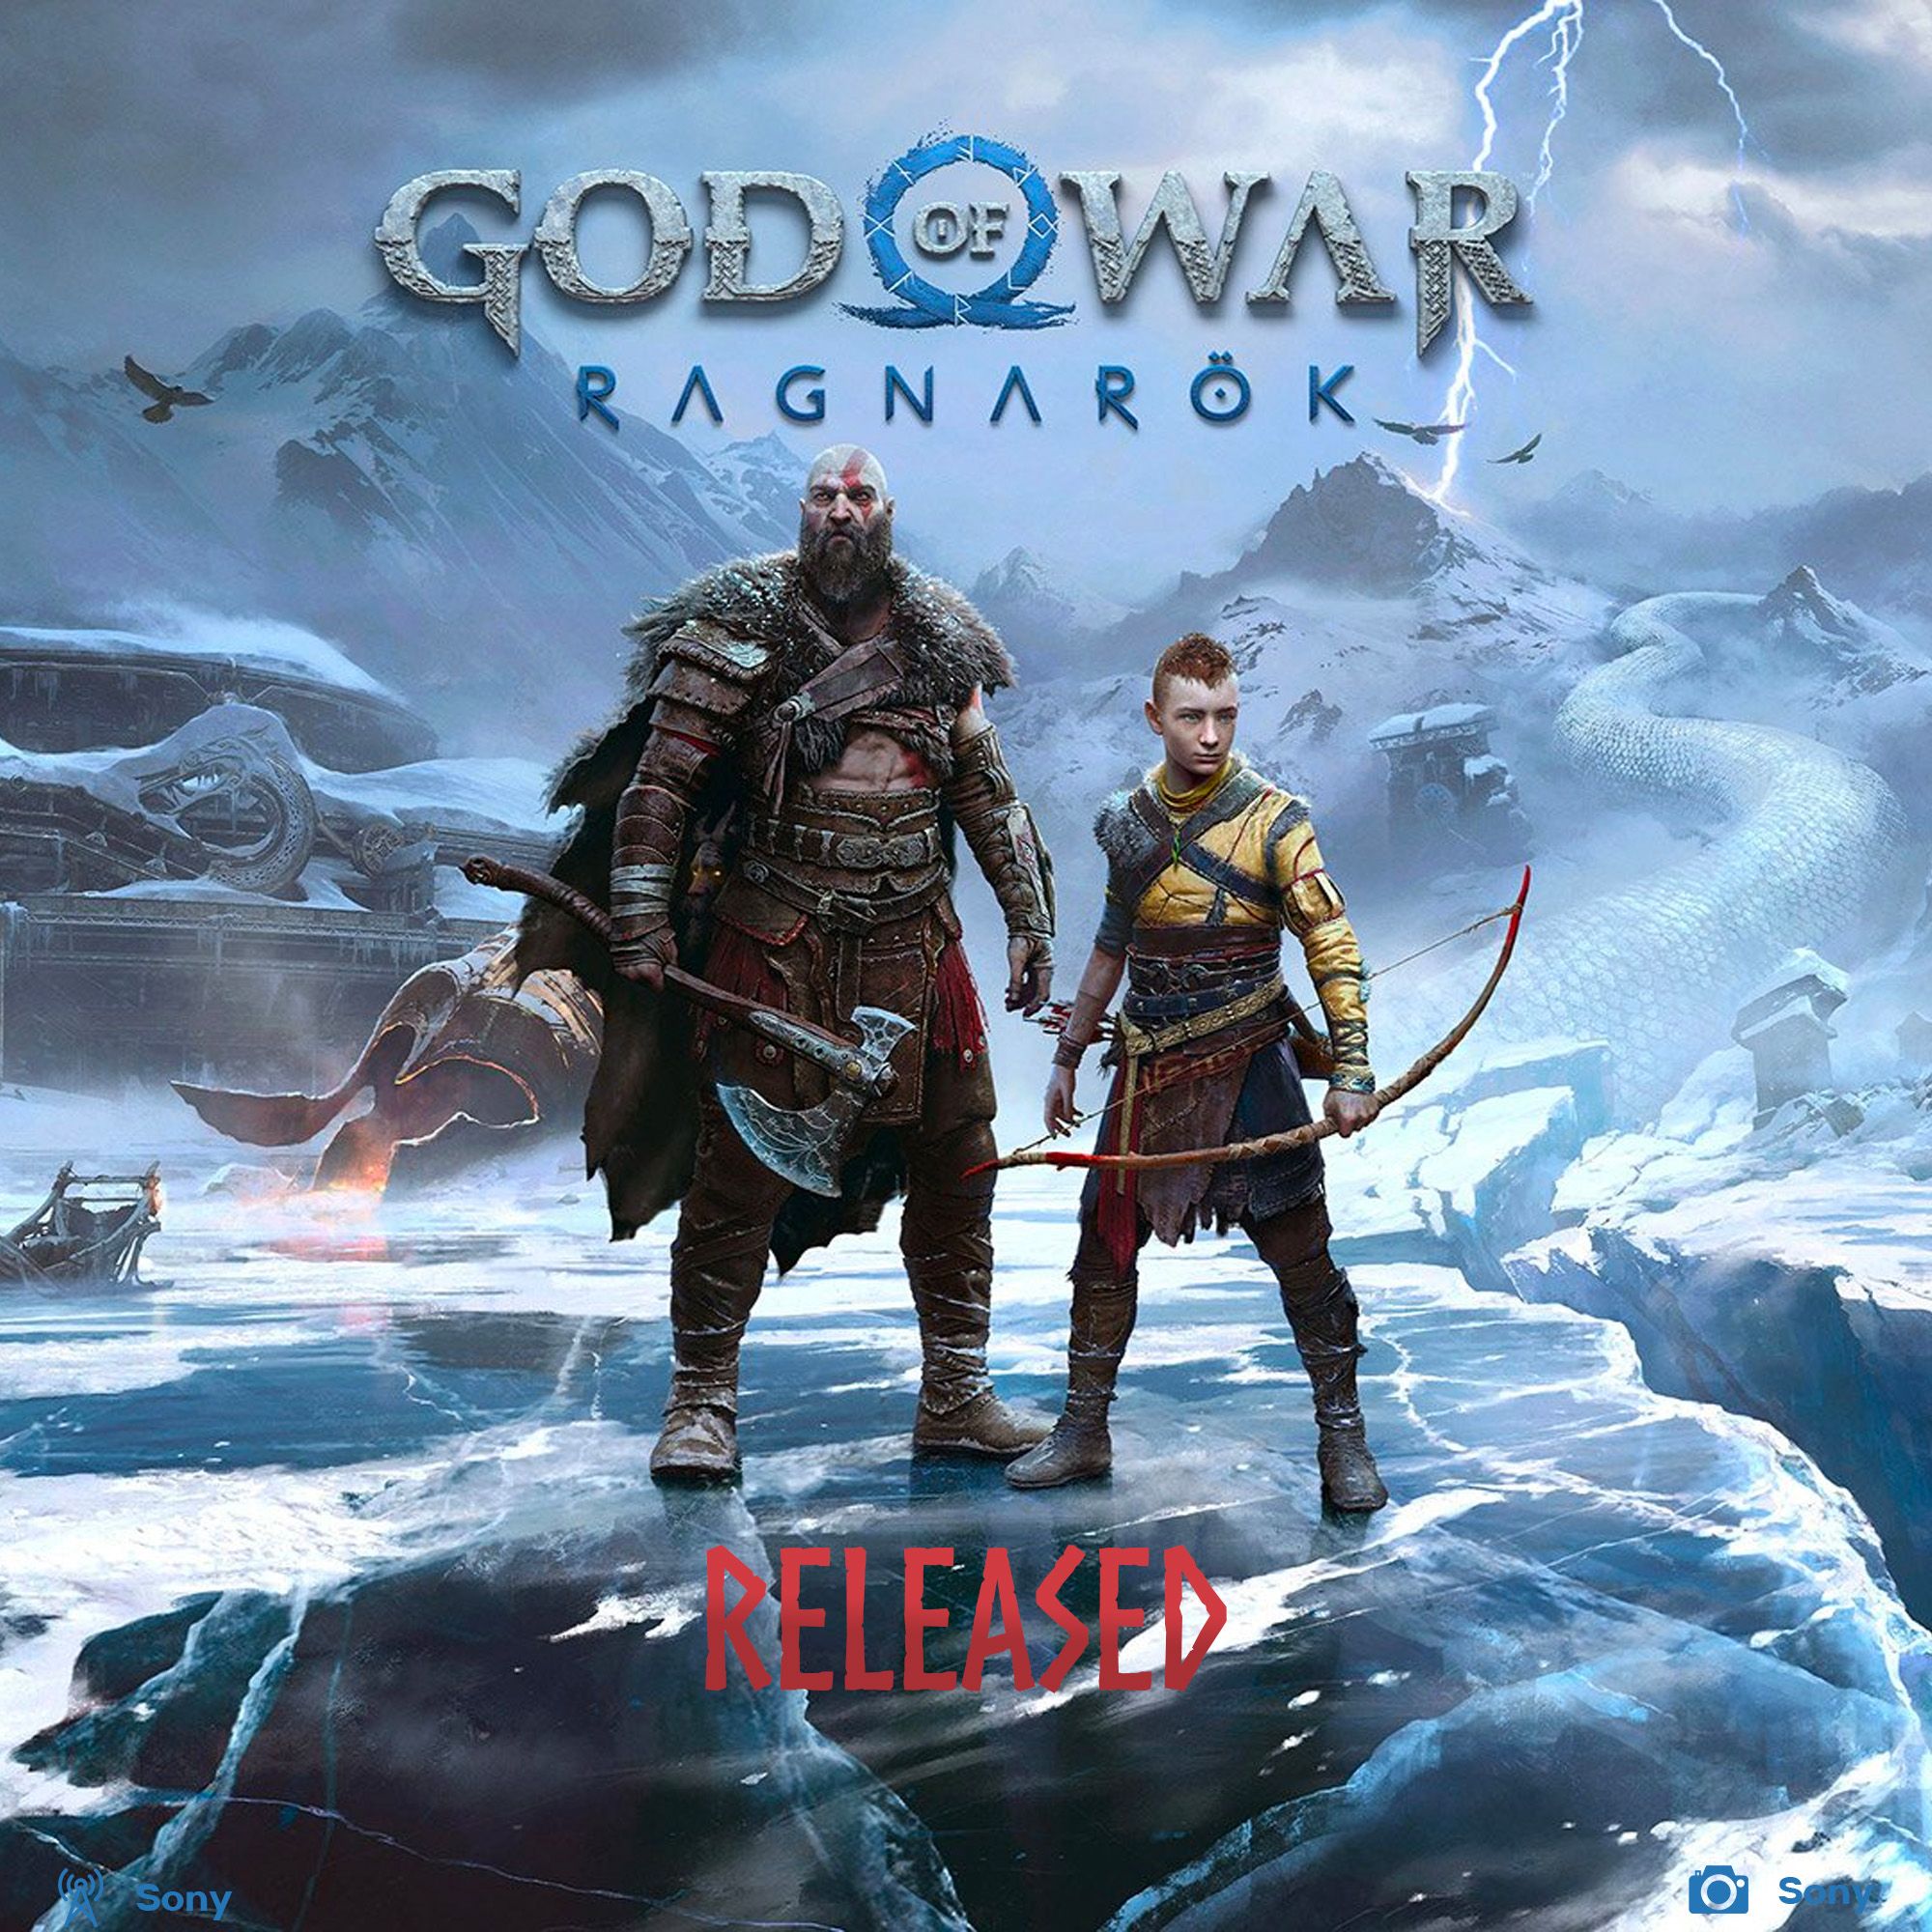 God of War Ragnarok released